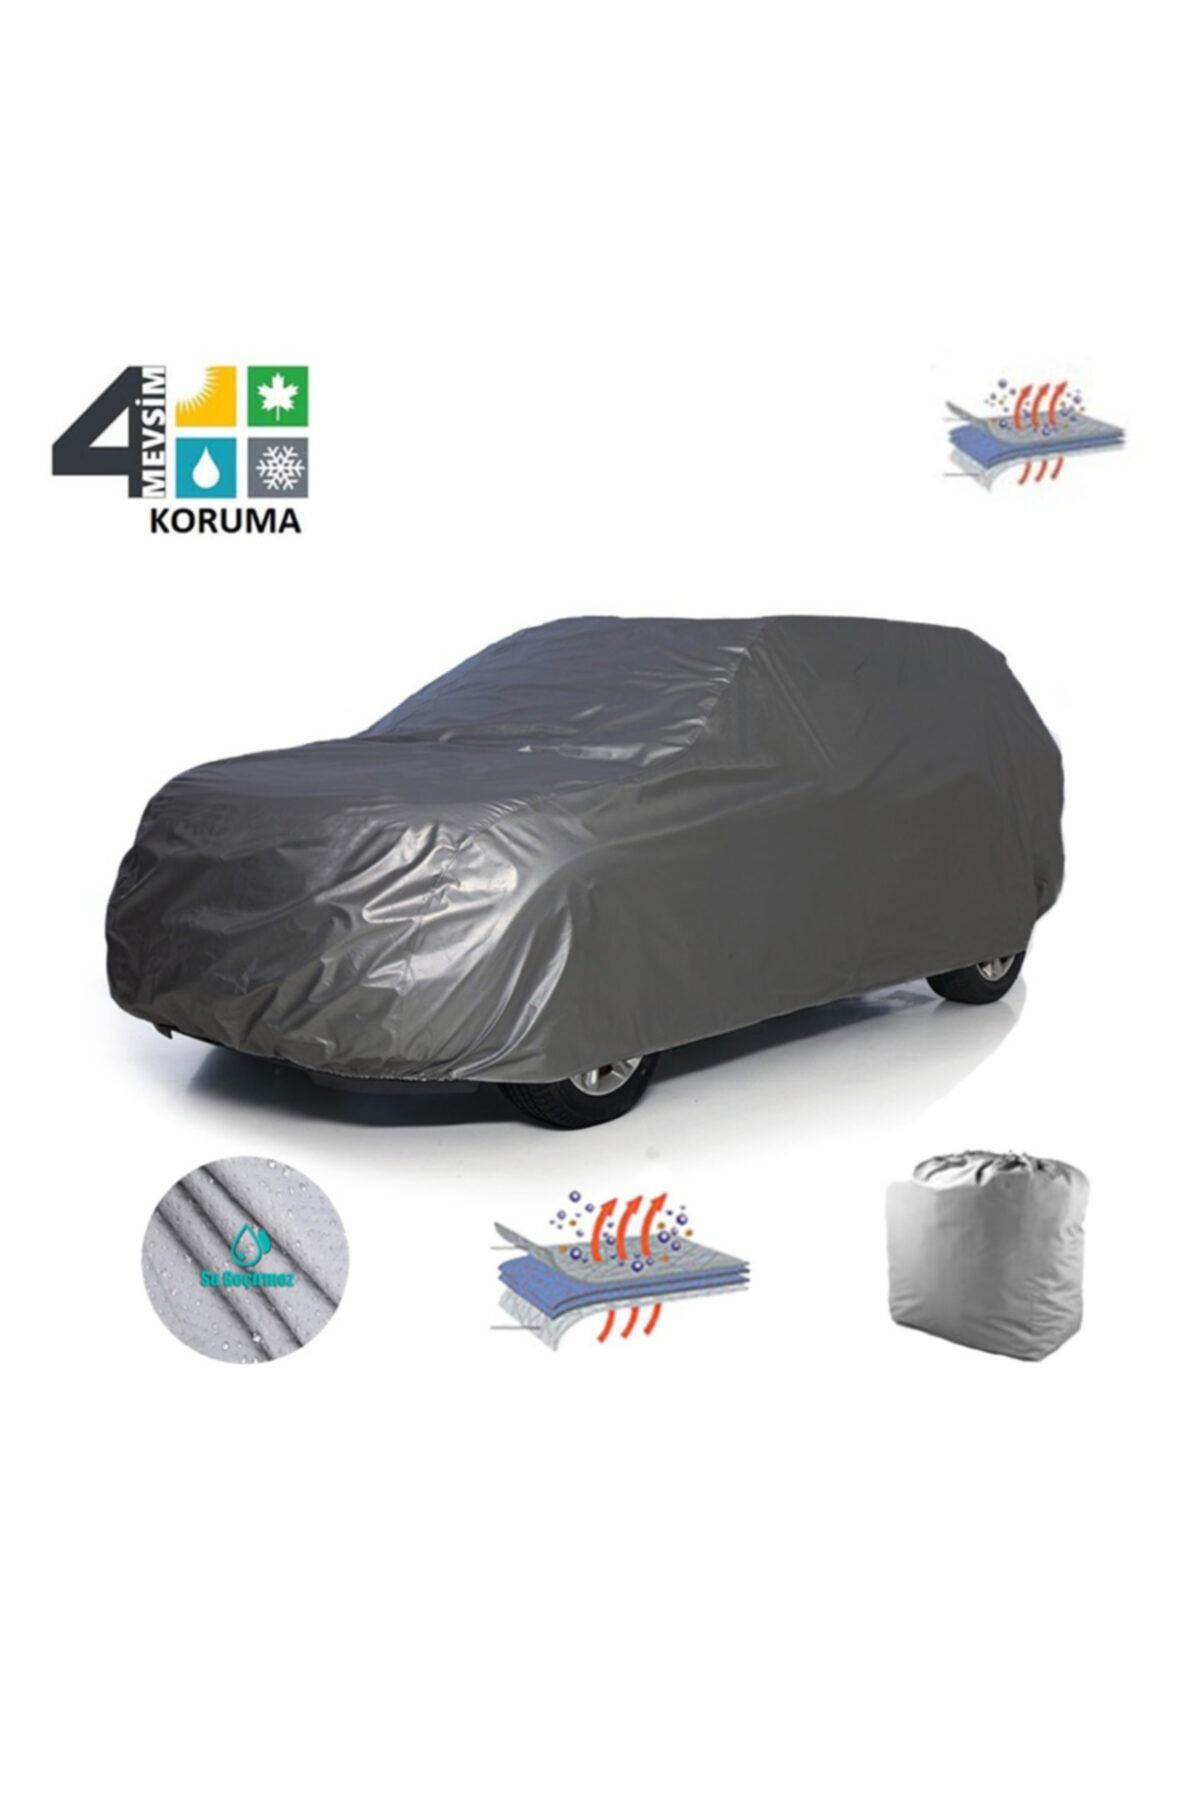 ENCAR Dacia Logan Mcv - Laureate Car Tarpaulin, Cover, Tent - Trendyol